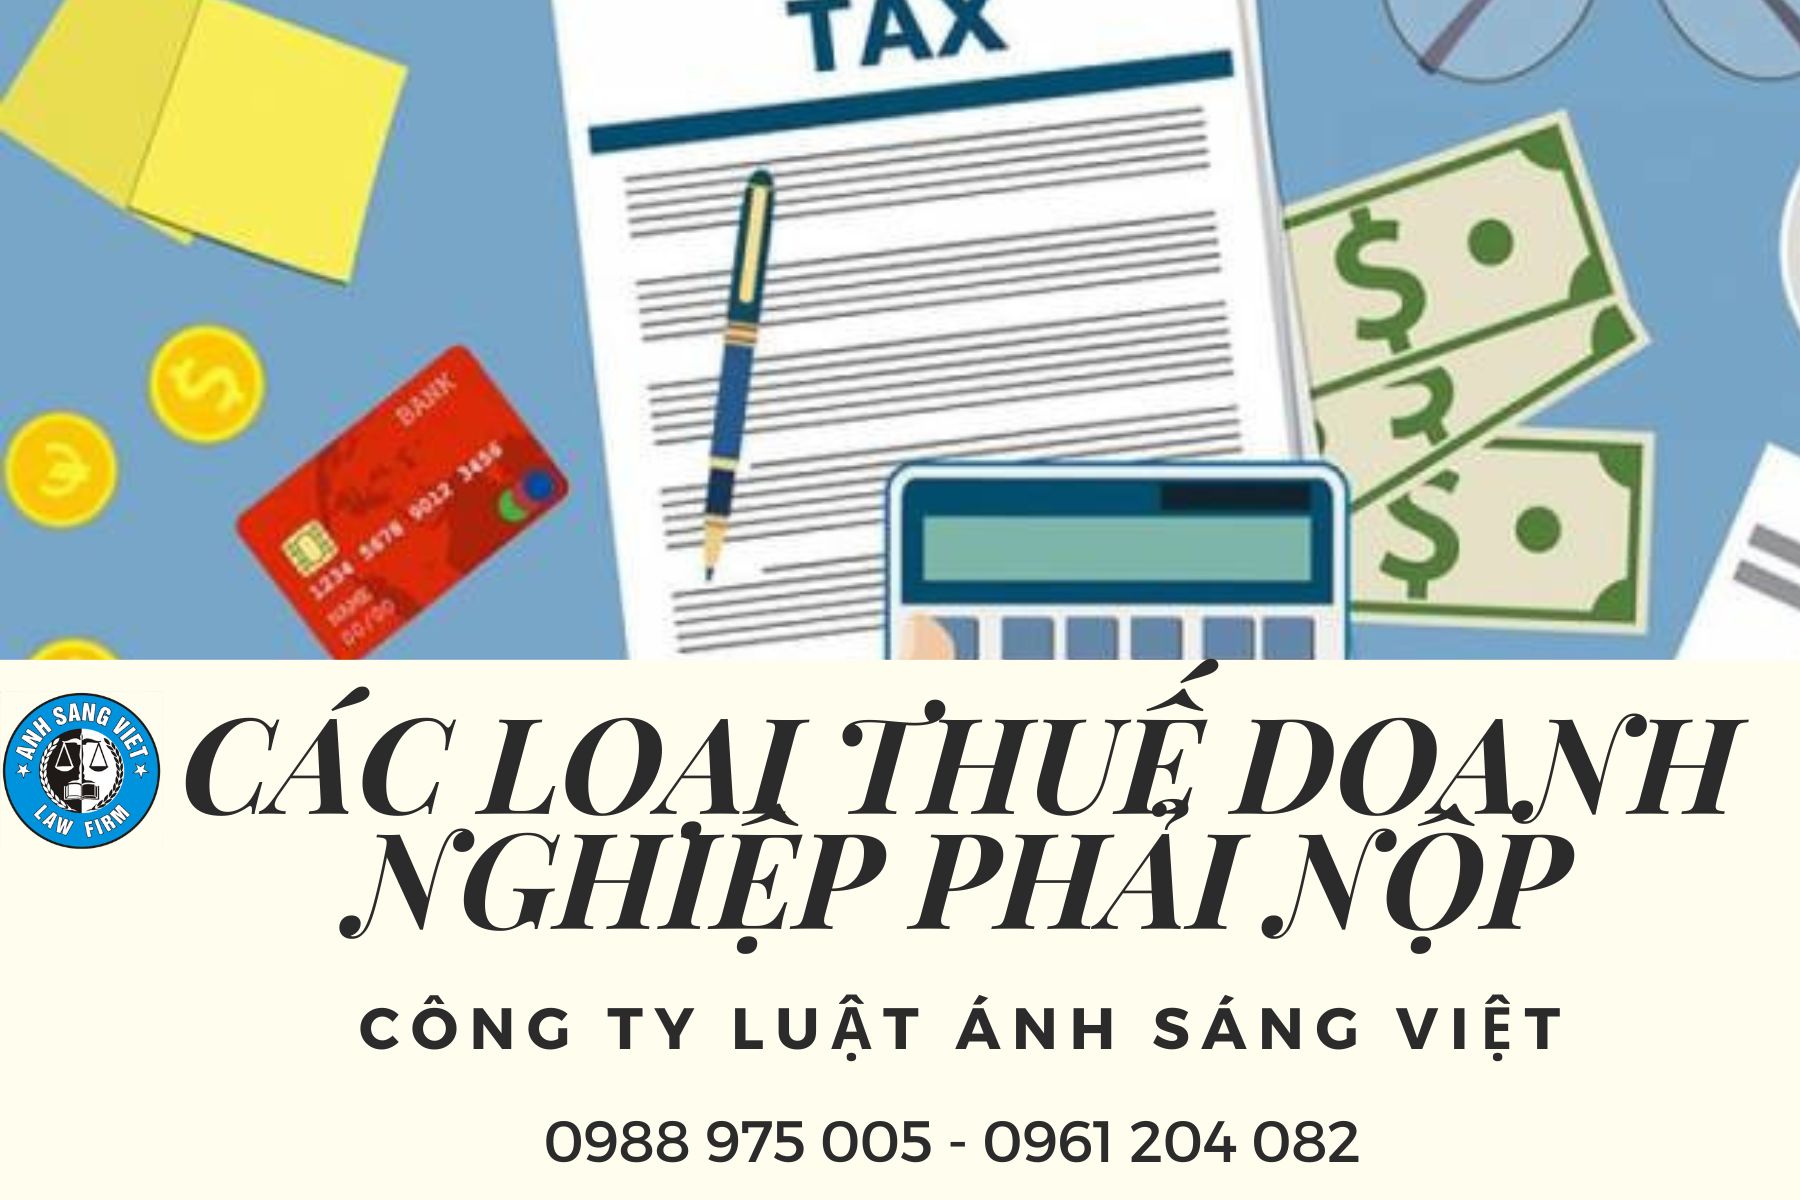 CÁC LOẠI THUẾ DOANH NGHIỆP PHẢI NỘP - Công ty luật Ánh Sáng Việt